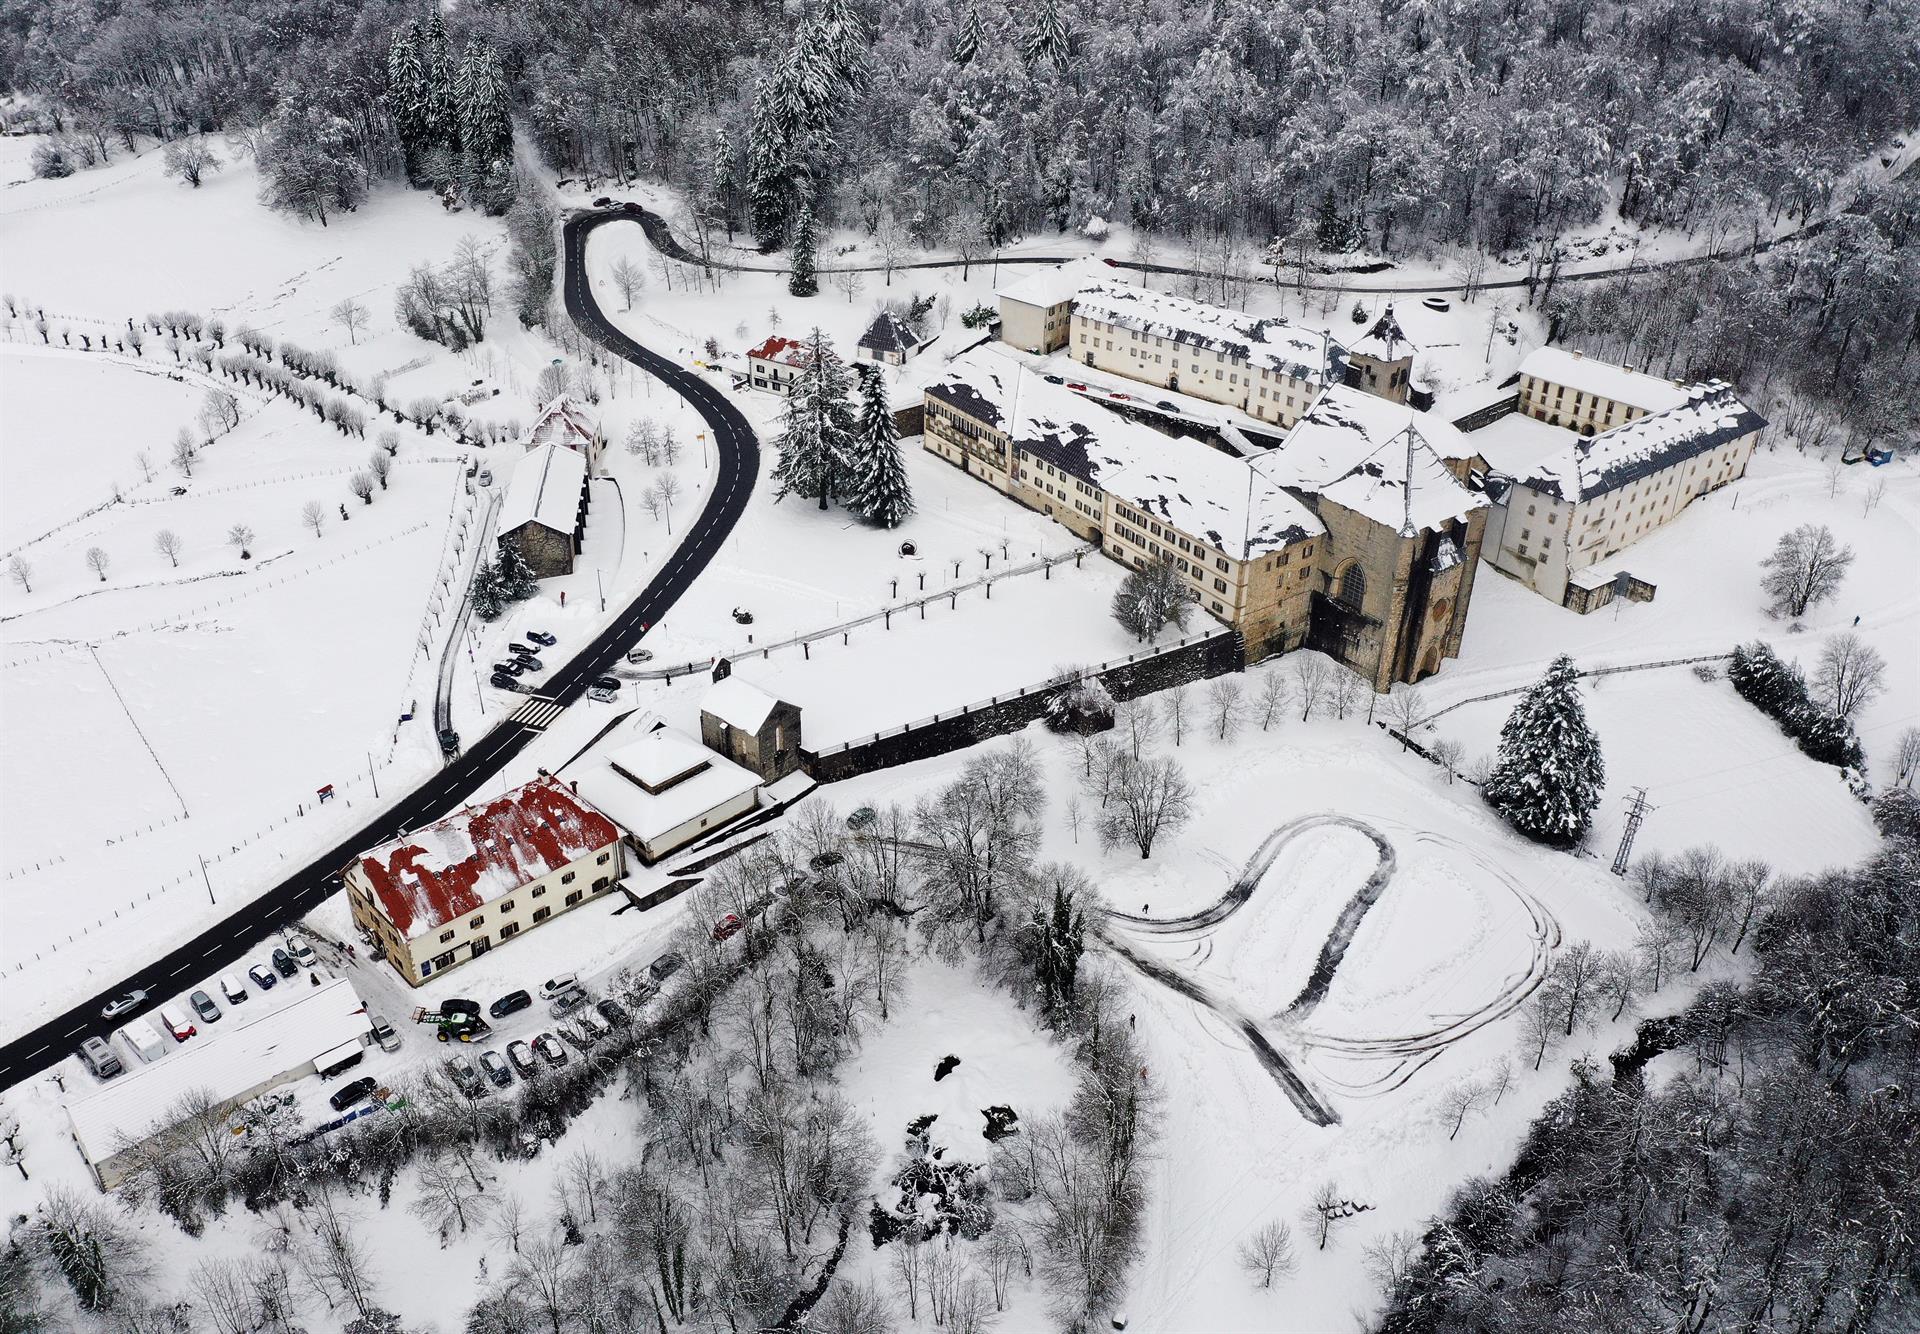 Imagen tomada desde un dron de la Colegiata de Roncesvalles cubierta de nieve tras los últimos temporales que han afectado a la zona.